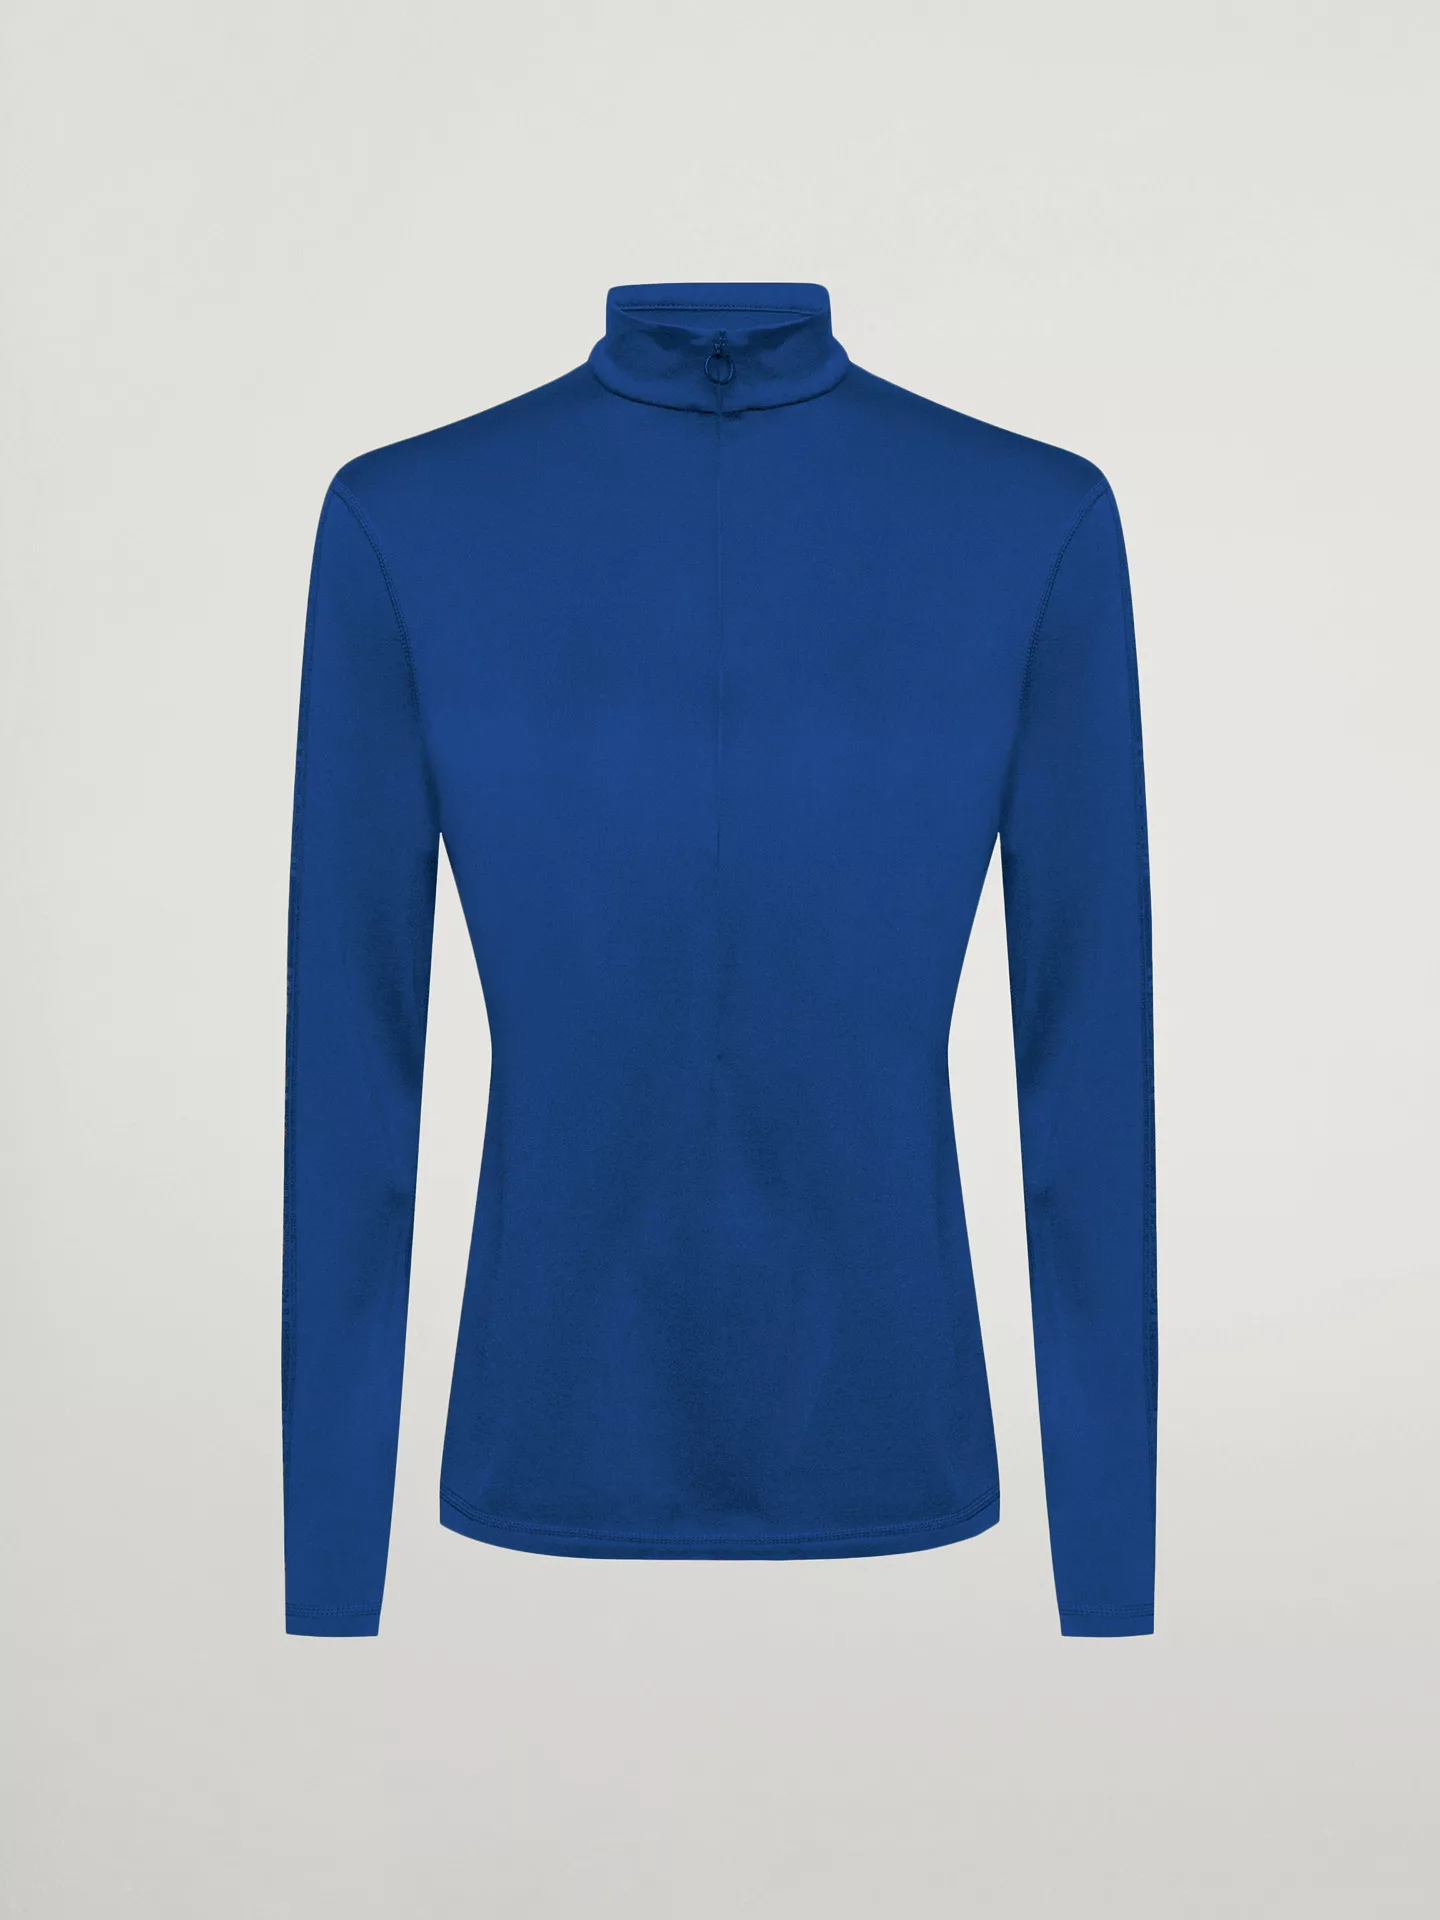 Wolford - Thermal Top Long Sleeves, Frau, sodalite blue, Größe: XS günstig online kaufen